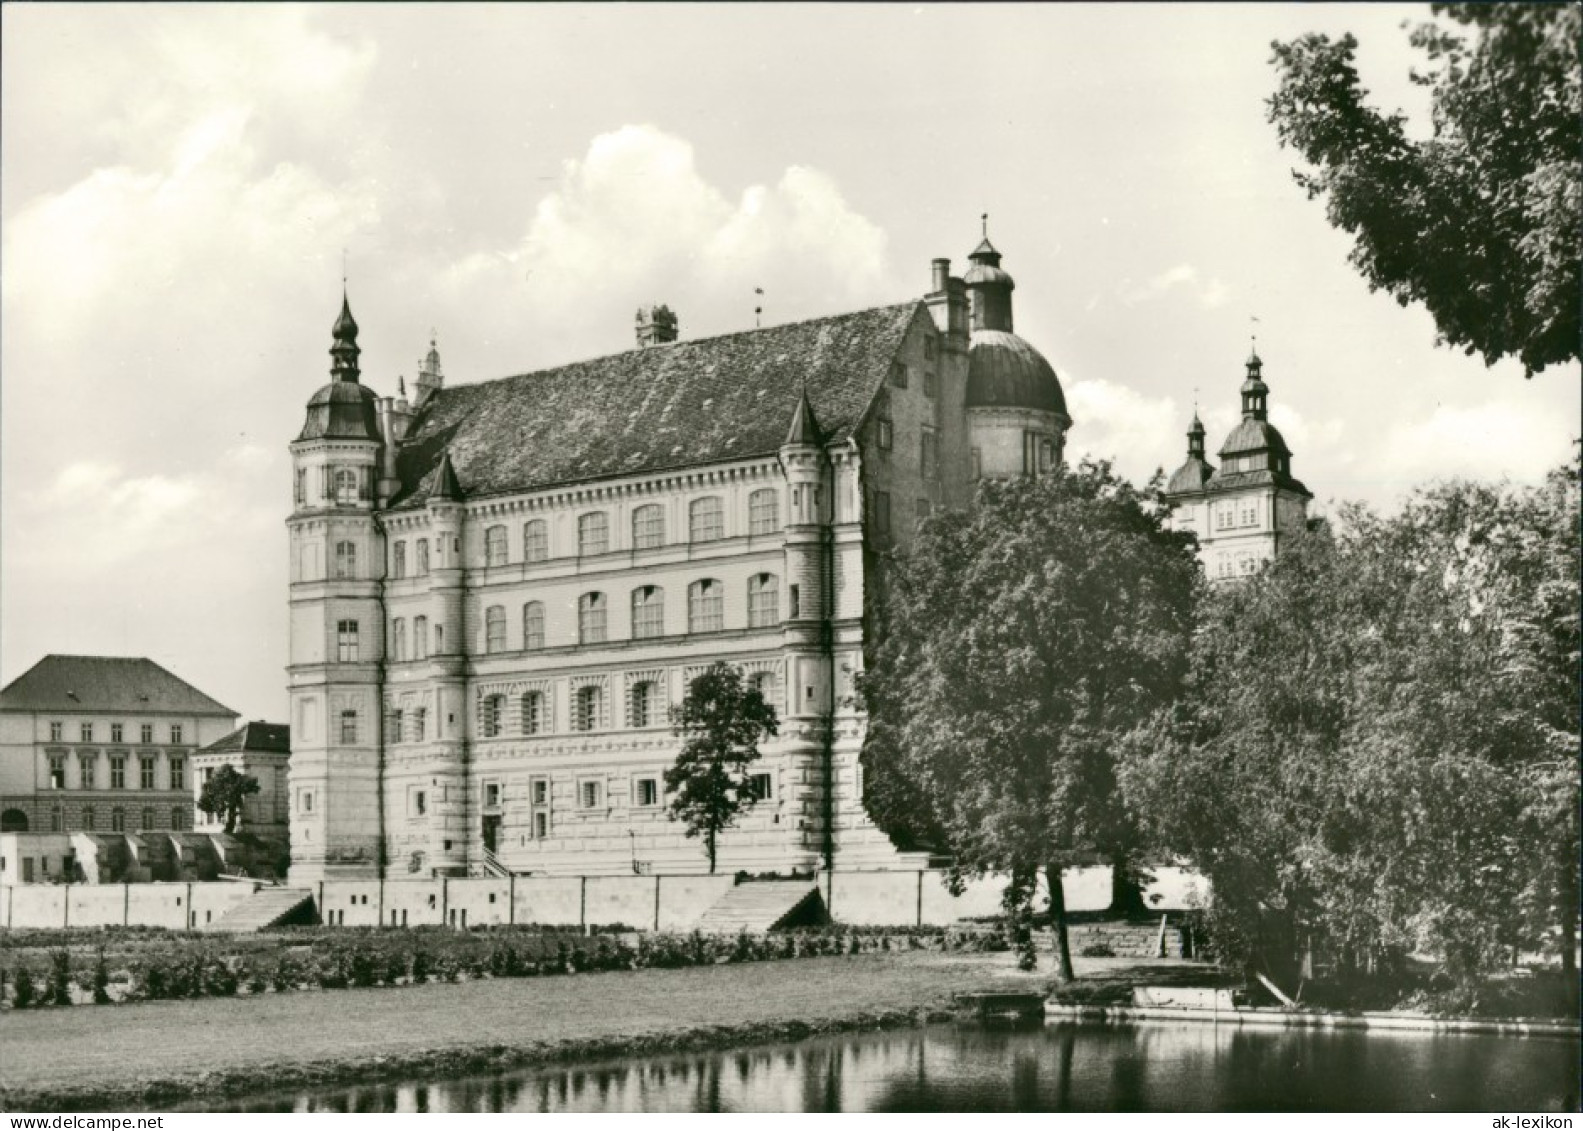 Ansichtskarte Güstrow Schloss 1980 Bild&Heimat - Guestrow